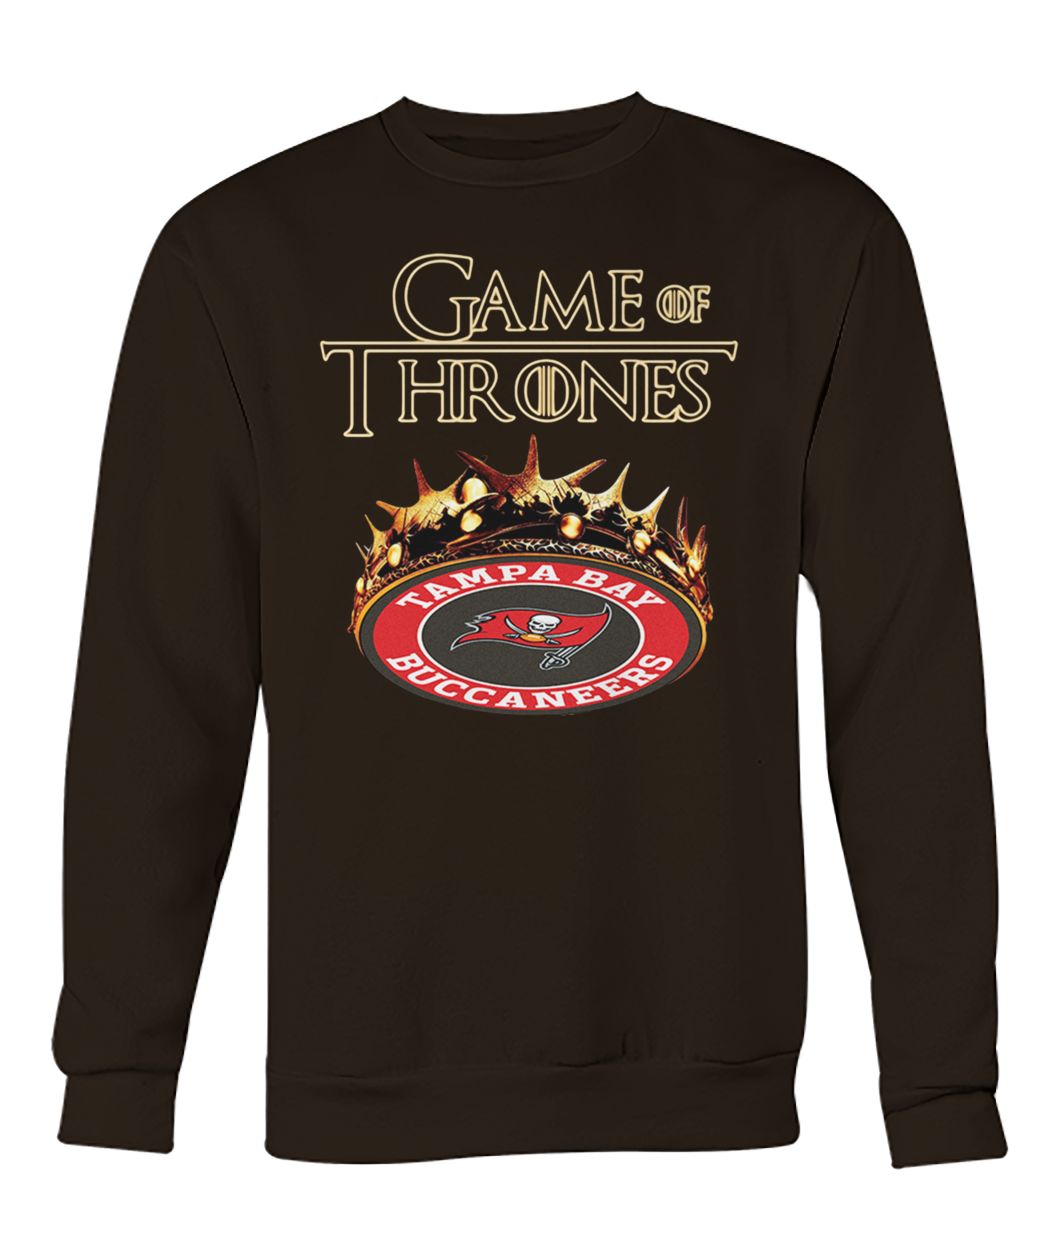 Game of thrones crown tampa bay buccaneers crew neck sweatshirt